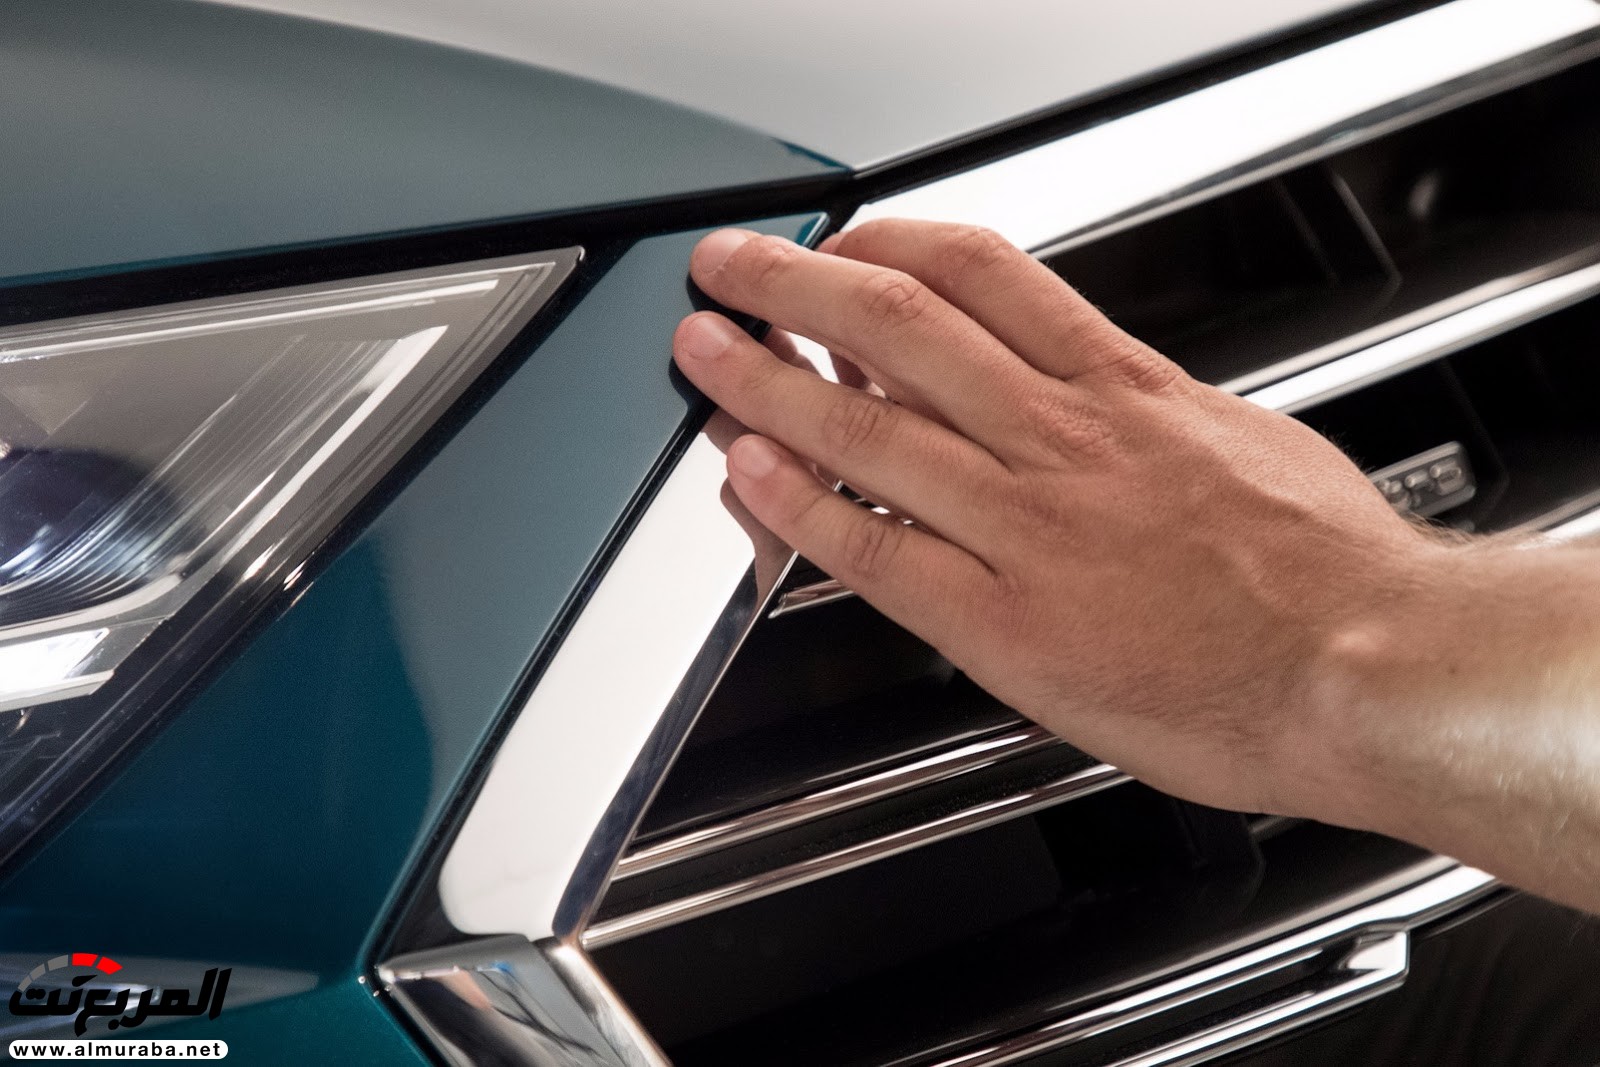 اودي A8 2018 الشكل الجديد + معلومات وموعد التدشين "صور وفيديو" Audi 81